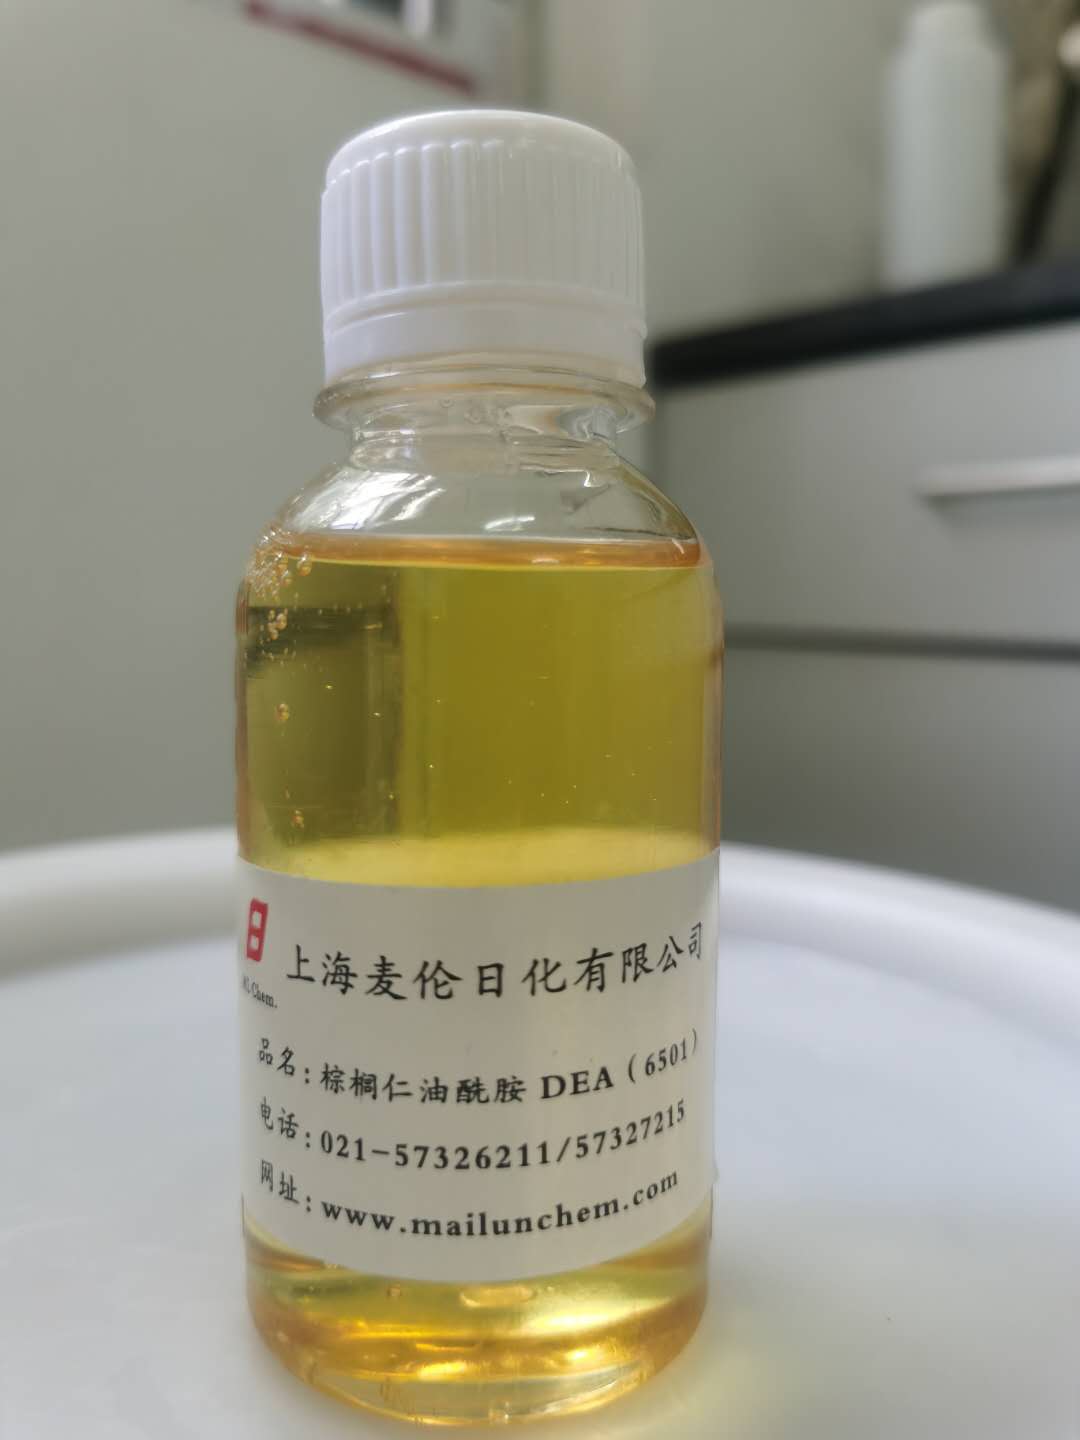 棕櫚仁油酰胺 DEA（Palmkernel amide DEA） （6501）